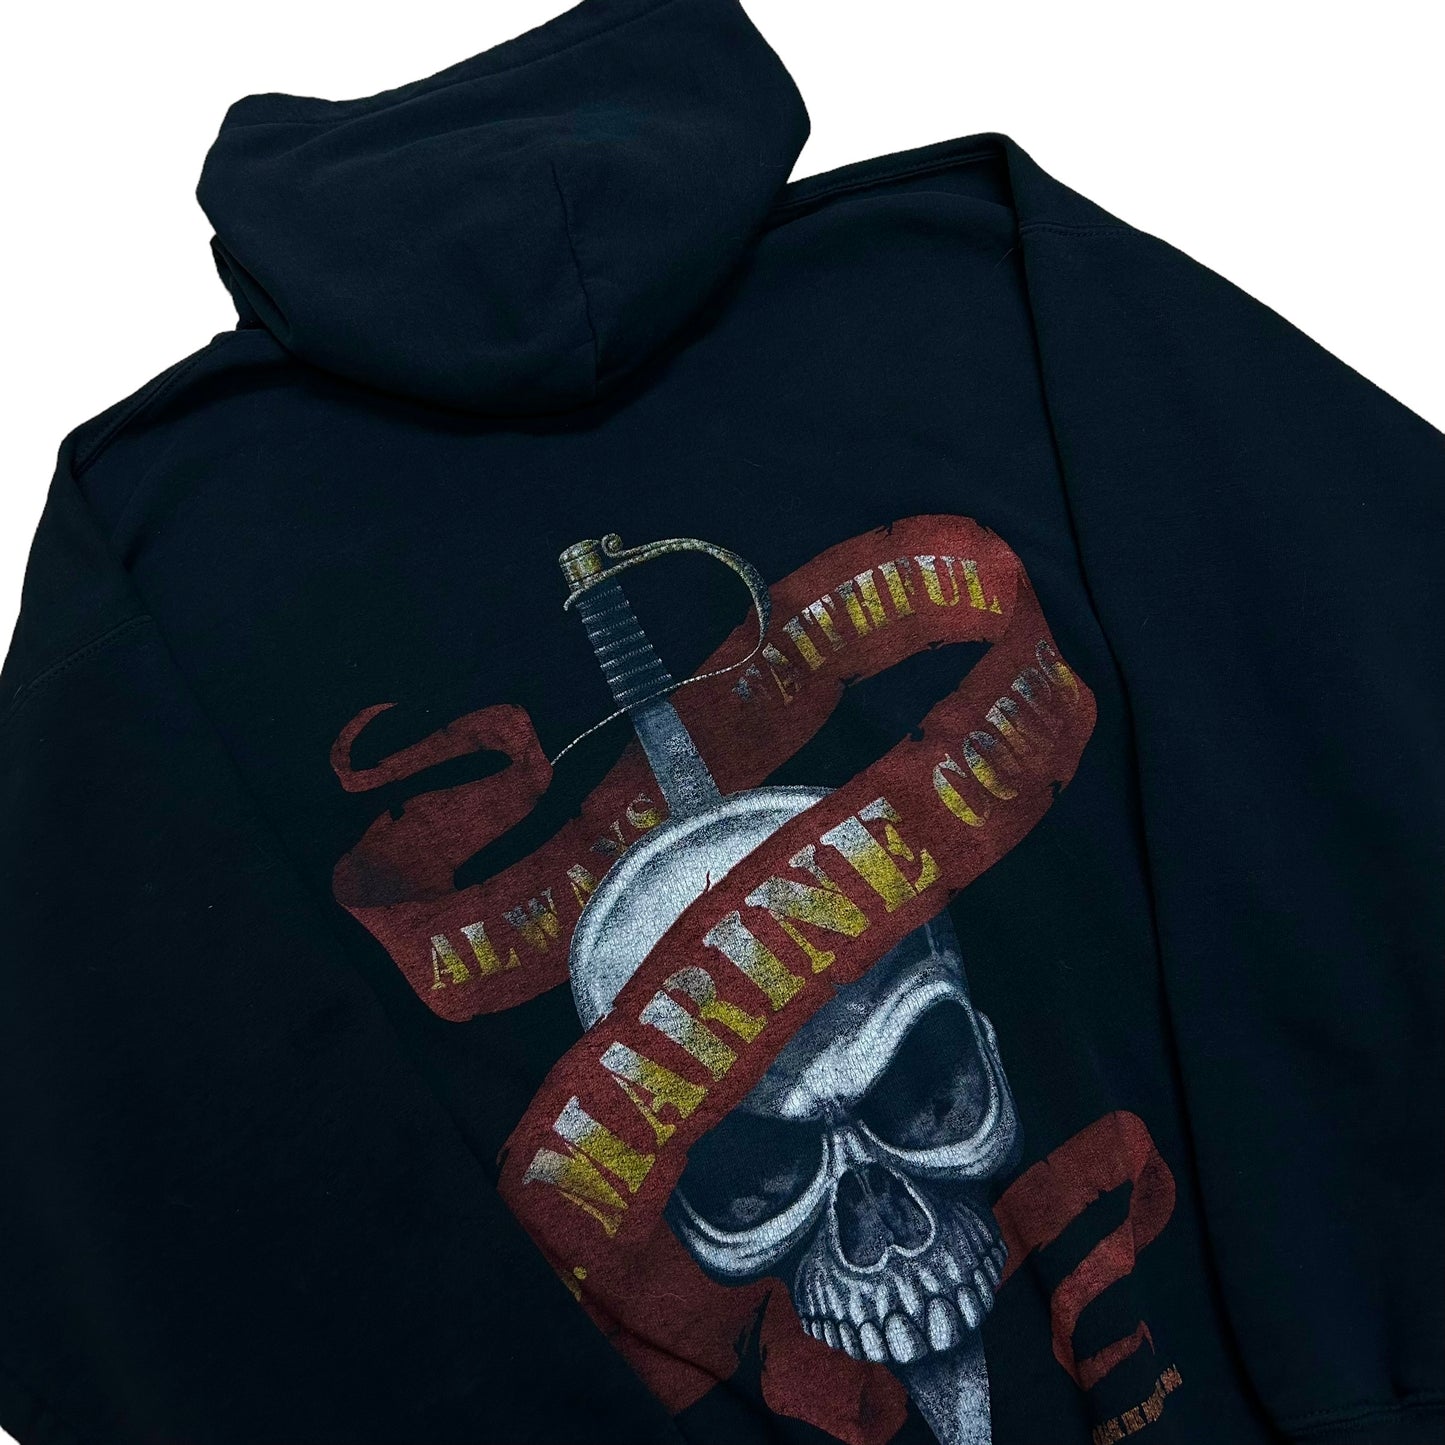 Mid-2000s United States Marine Corps “Always Faithful” Black Hooded Sweatshirt - Size Large